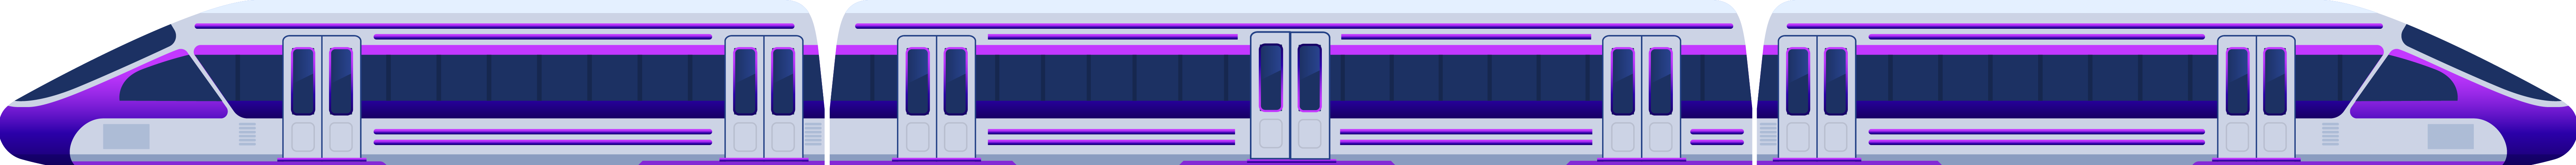 Underground-train-v2